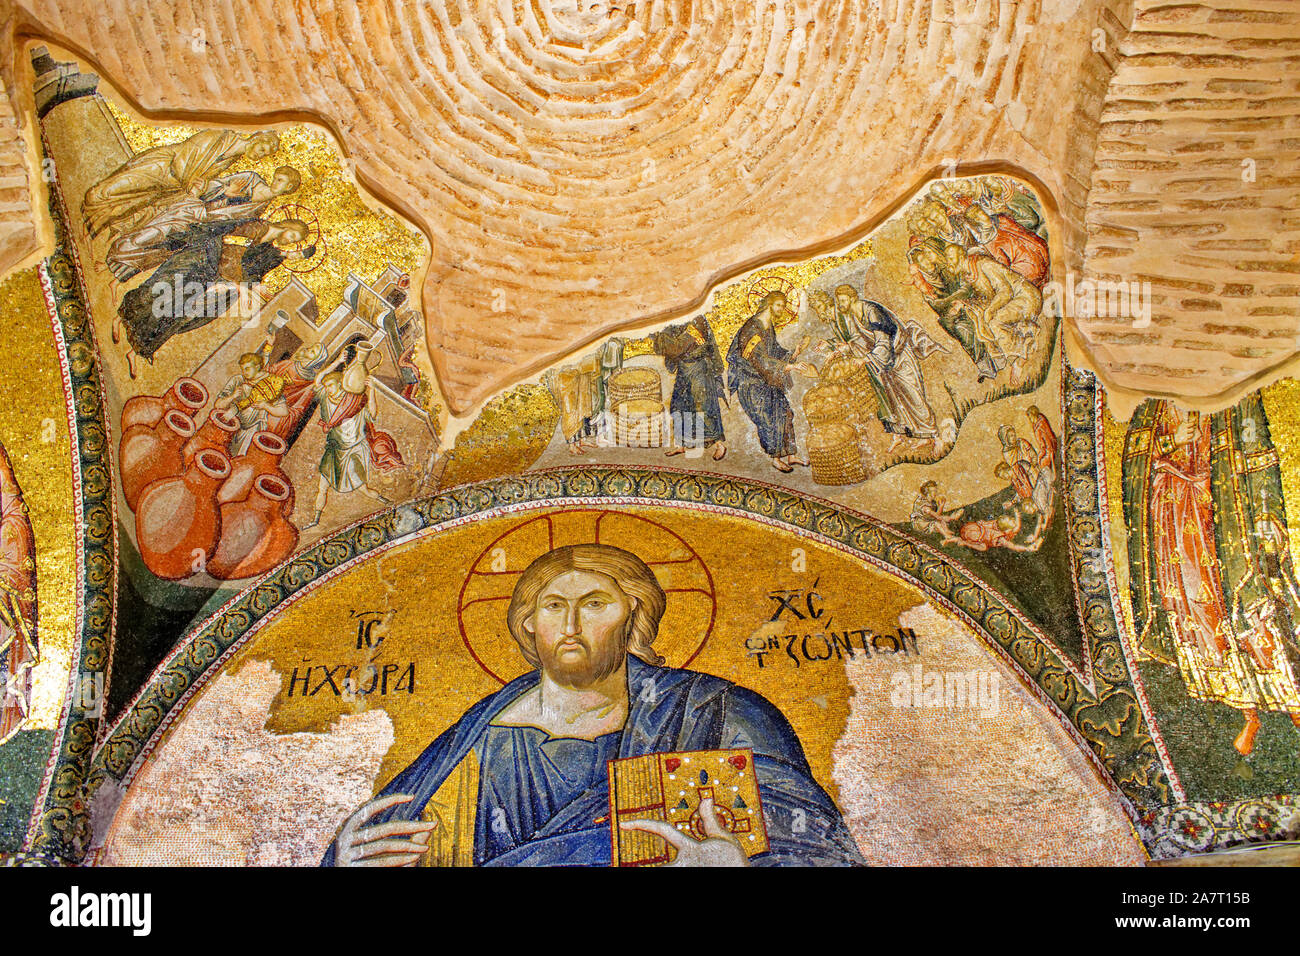 ISTANBUL TURCHIA chiesa del Santissimo Salvatore IN CHORA bizantina ortodossa greca mosaici raffiguranti eventi nella bibbia qui girando l'acqua in vino Foto Stock